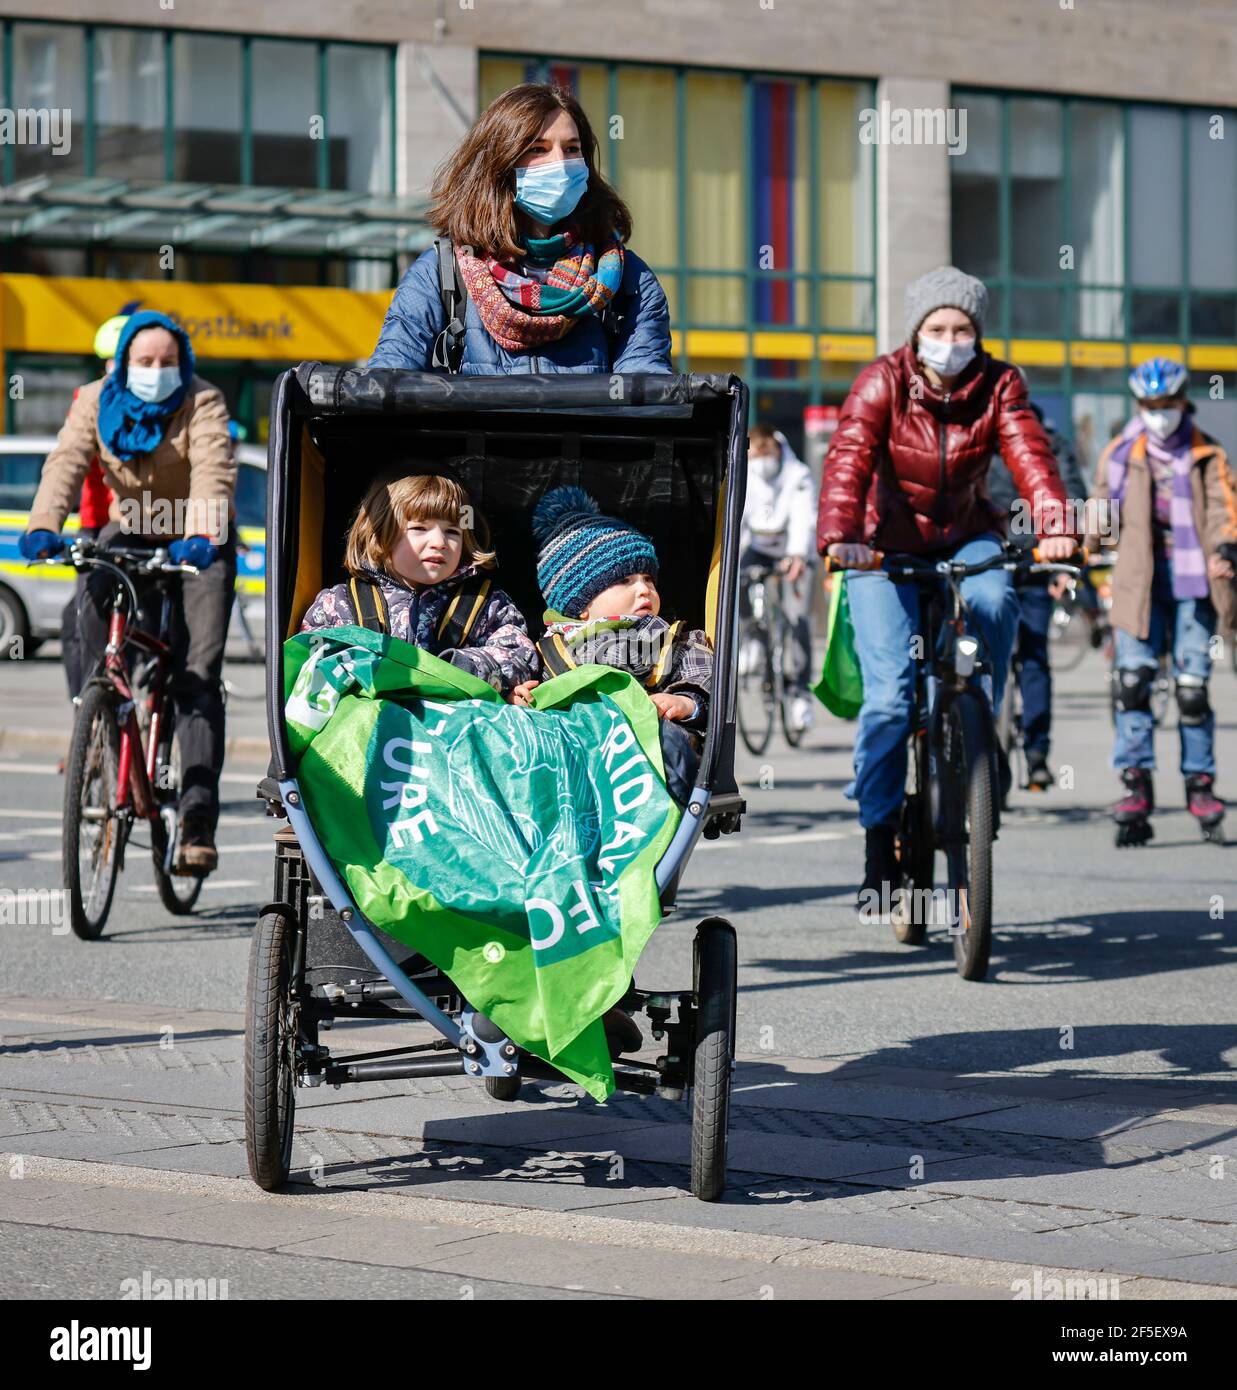 Essen, Nordrhein-Westfalen, Deutschland - Freitags für die Zukunft demonstrieren Klimaaktivisten in Zeiten der Corona Pandemie koronakonform mit Maske Stockfoto